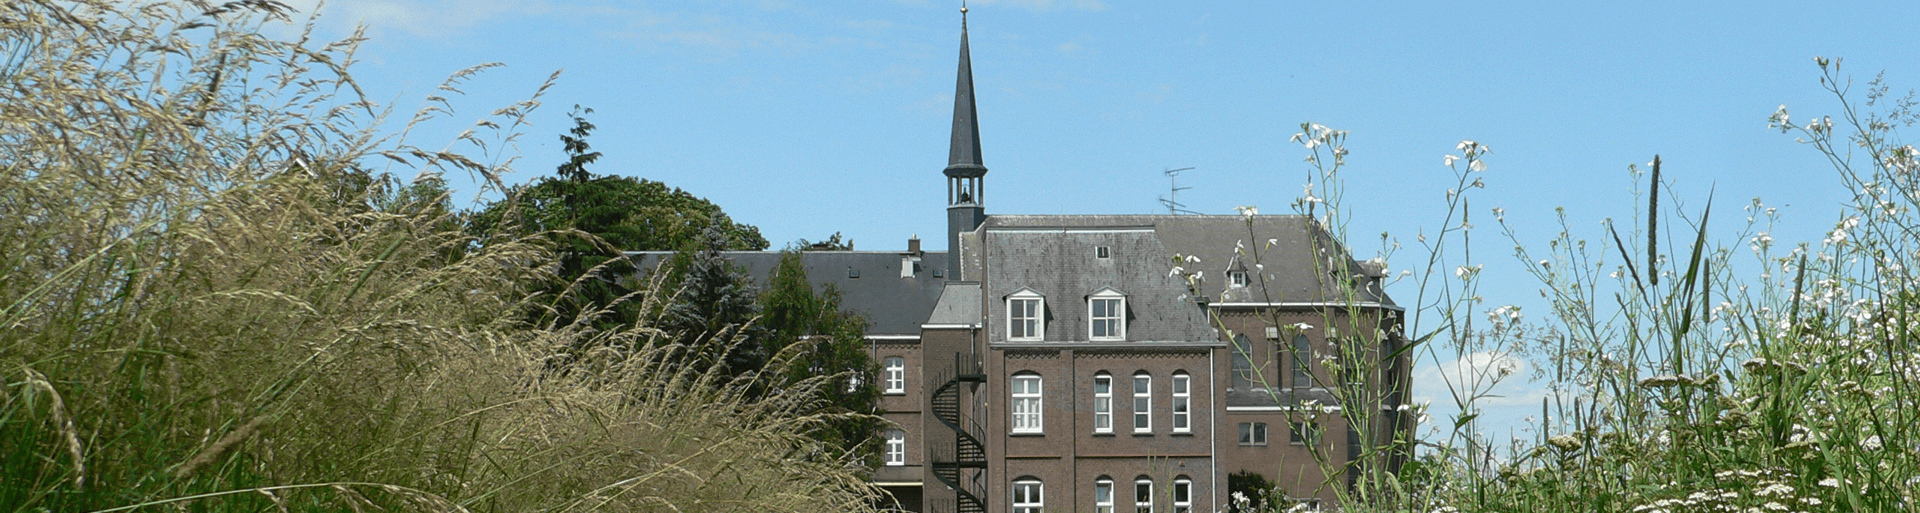 Klooster van Aarle Rixtel